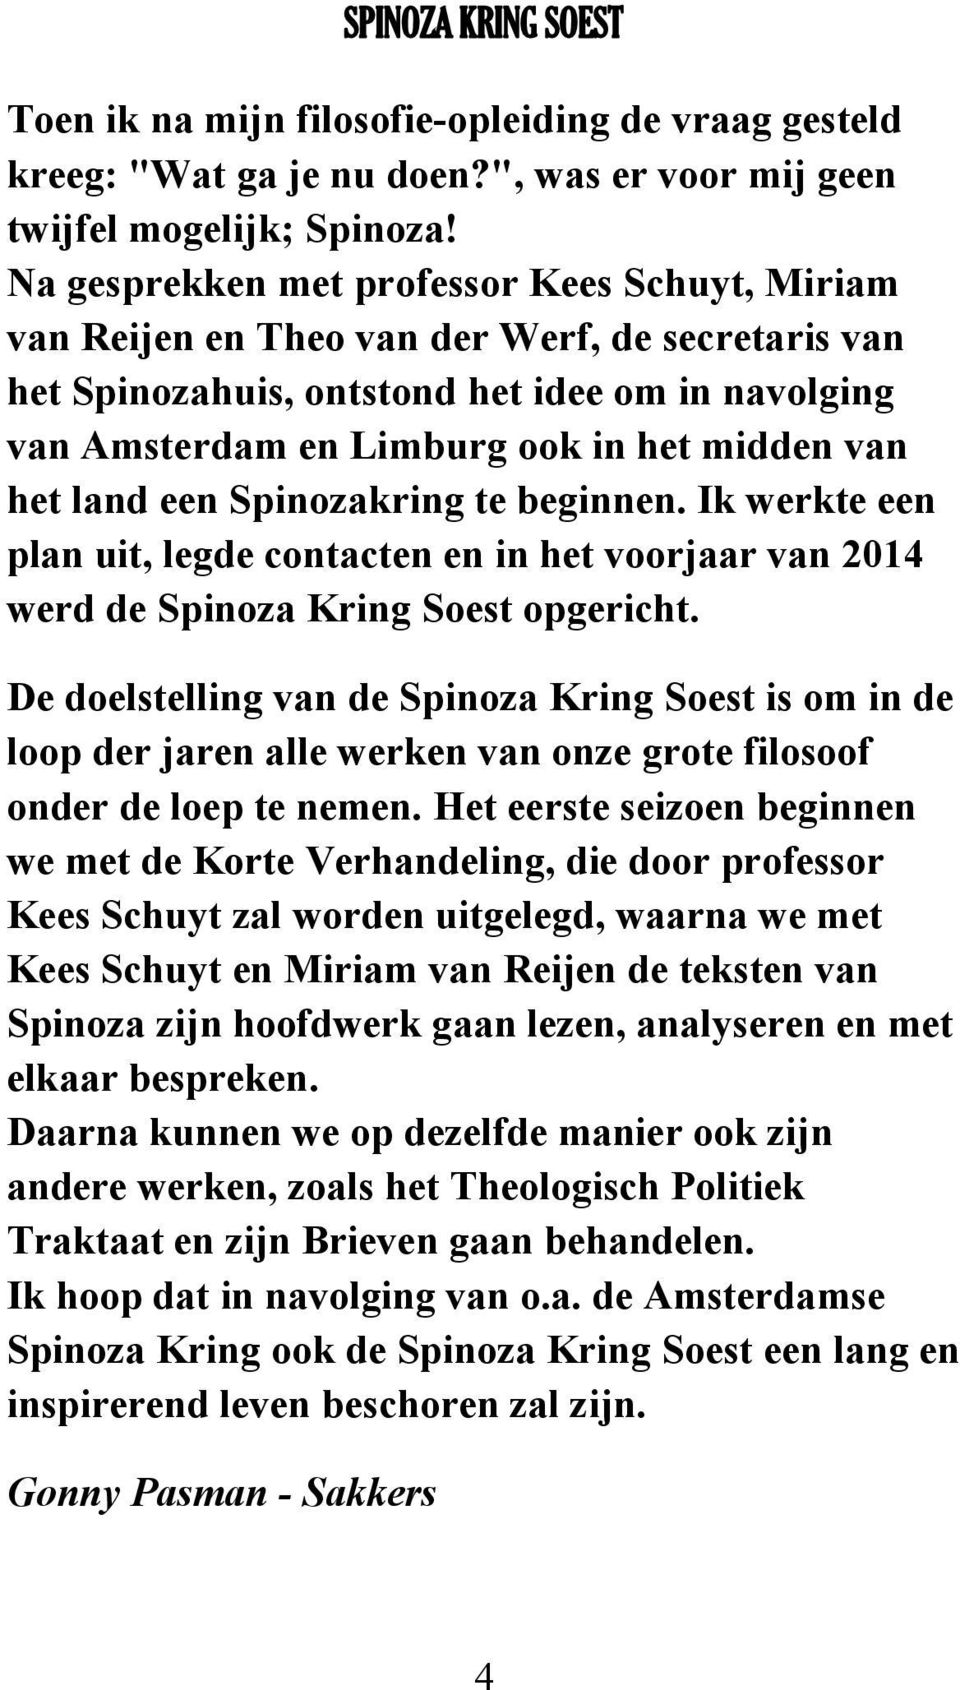 het land een Spinozakring te beginnen. Ik werkte een plan uit, legde contacten en in het voorjaar van 2014 werd de Spinoza Kring Soest opgericht.